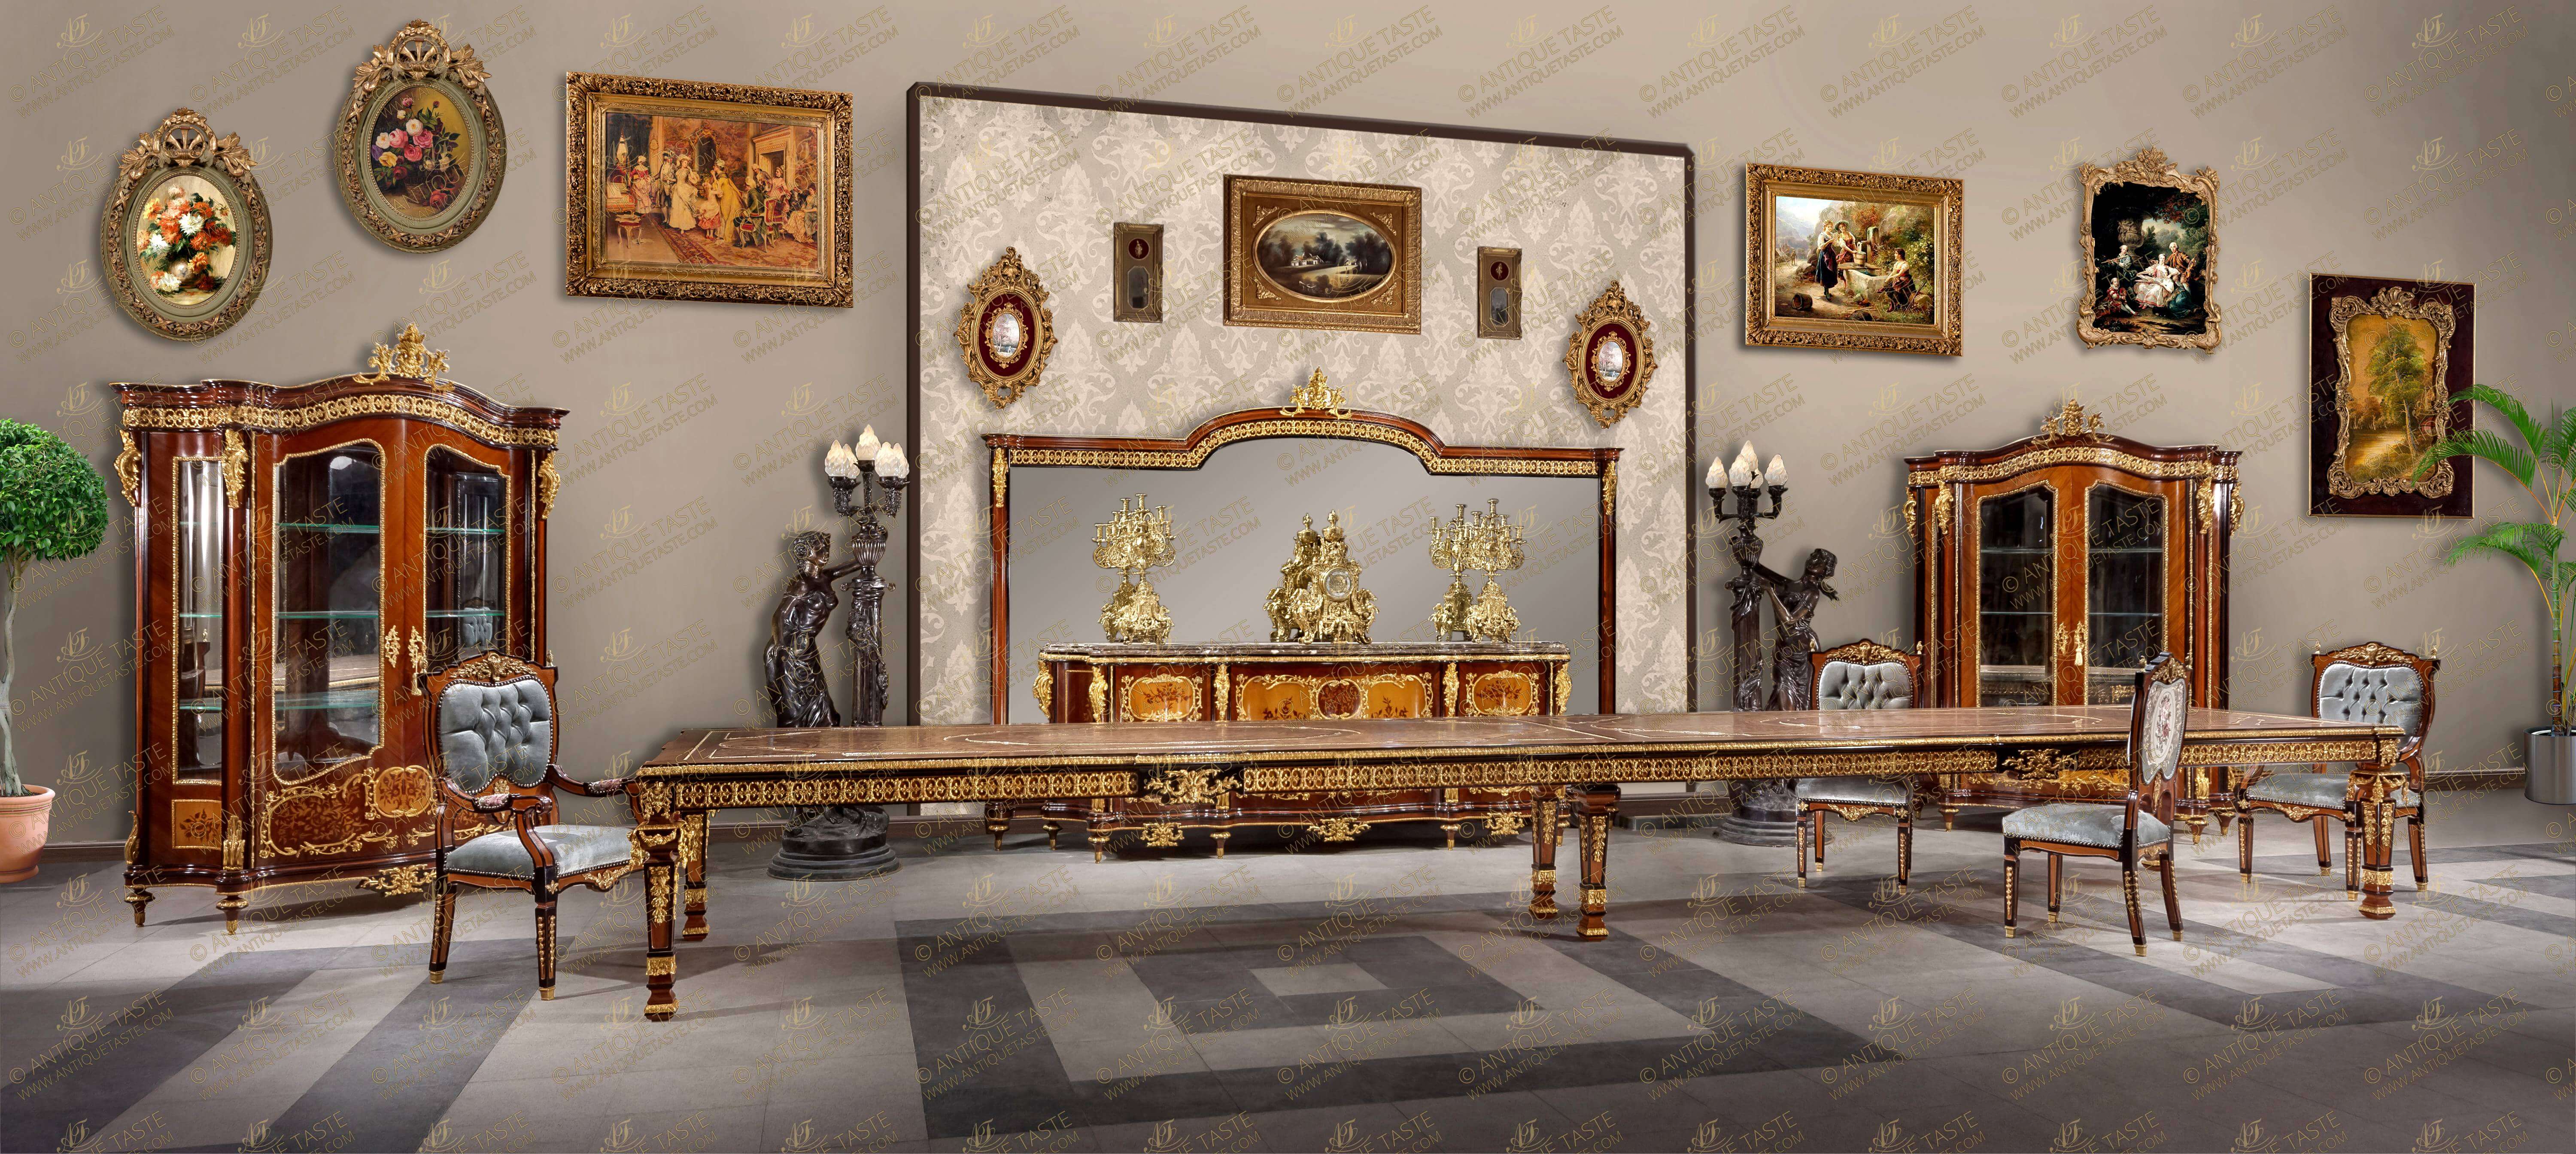 antique dining room furniture